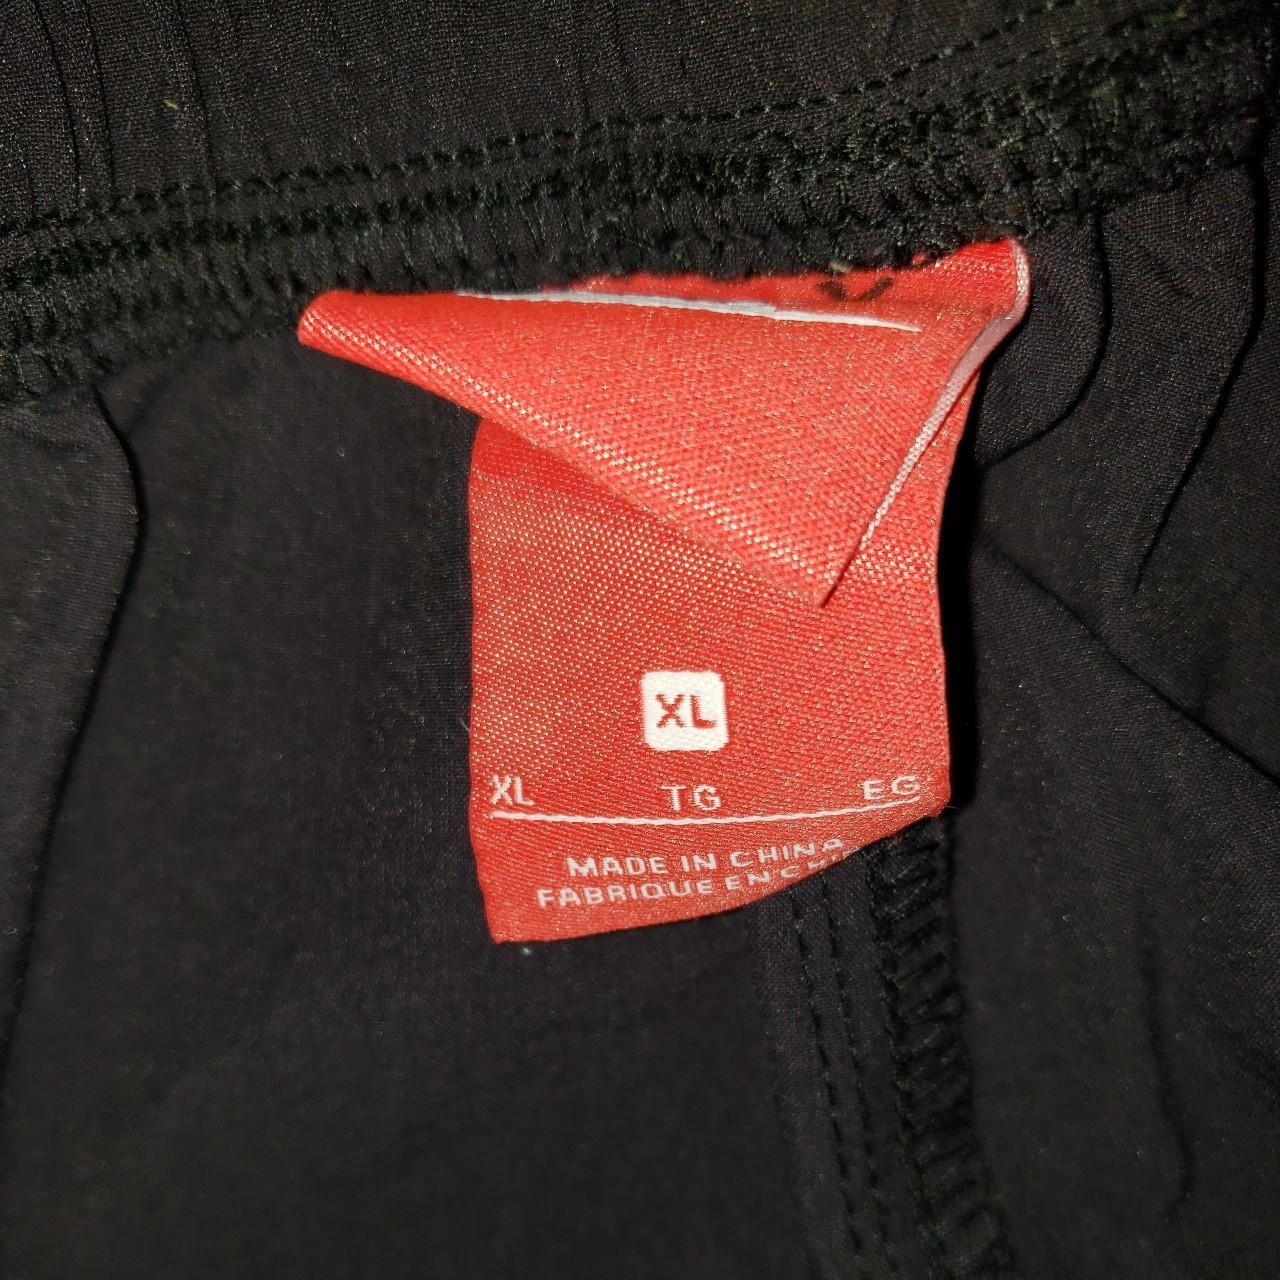 Product Image 2 - Men's Nike Shorts 

Size: XL